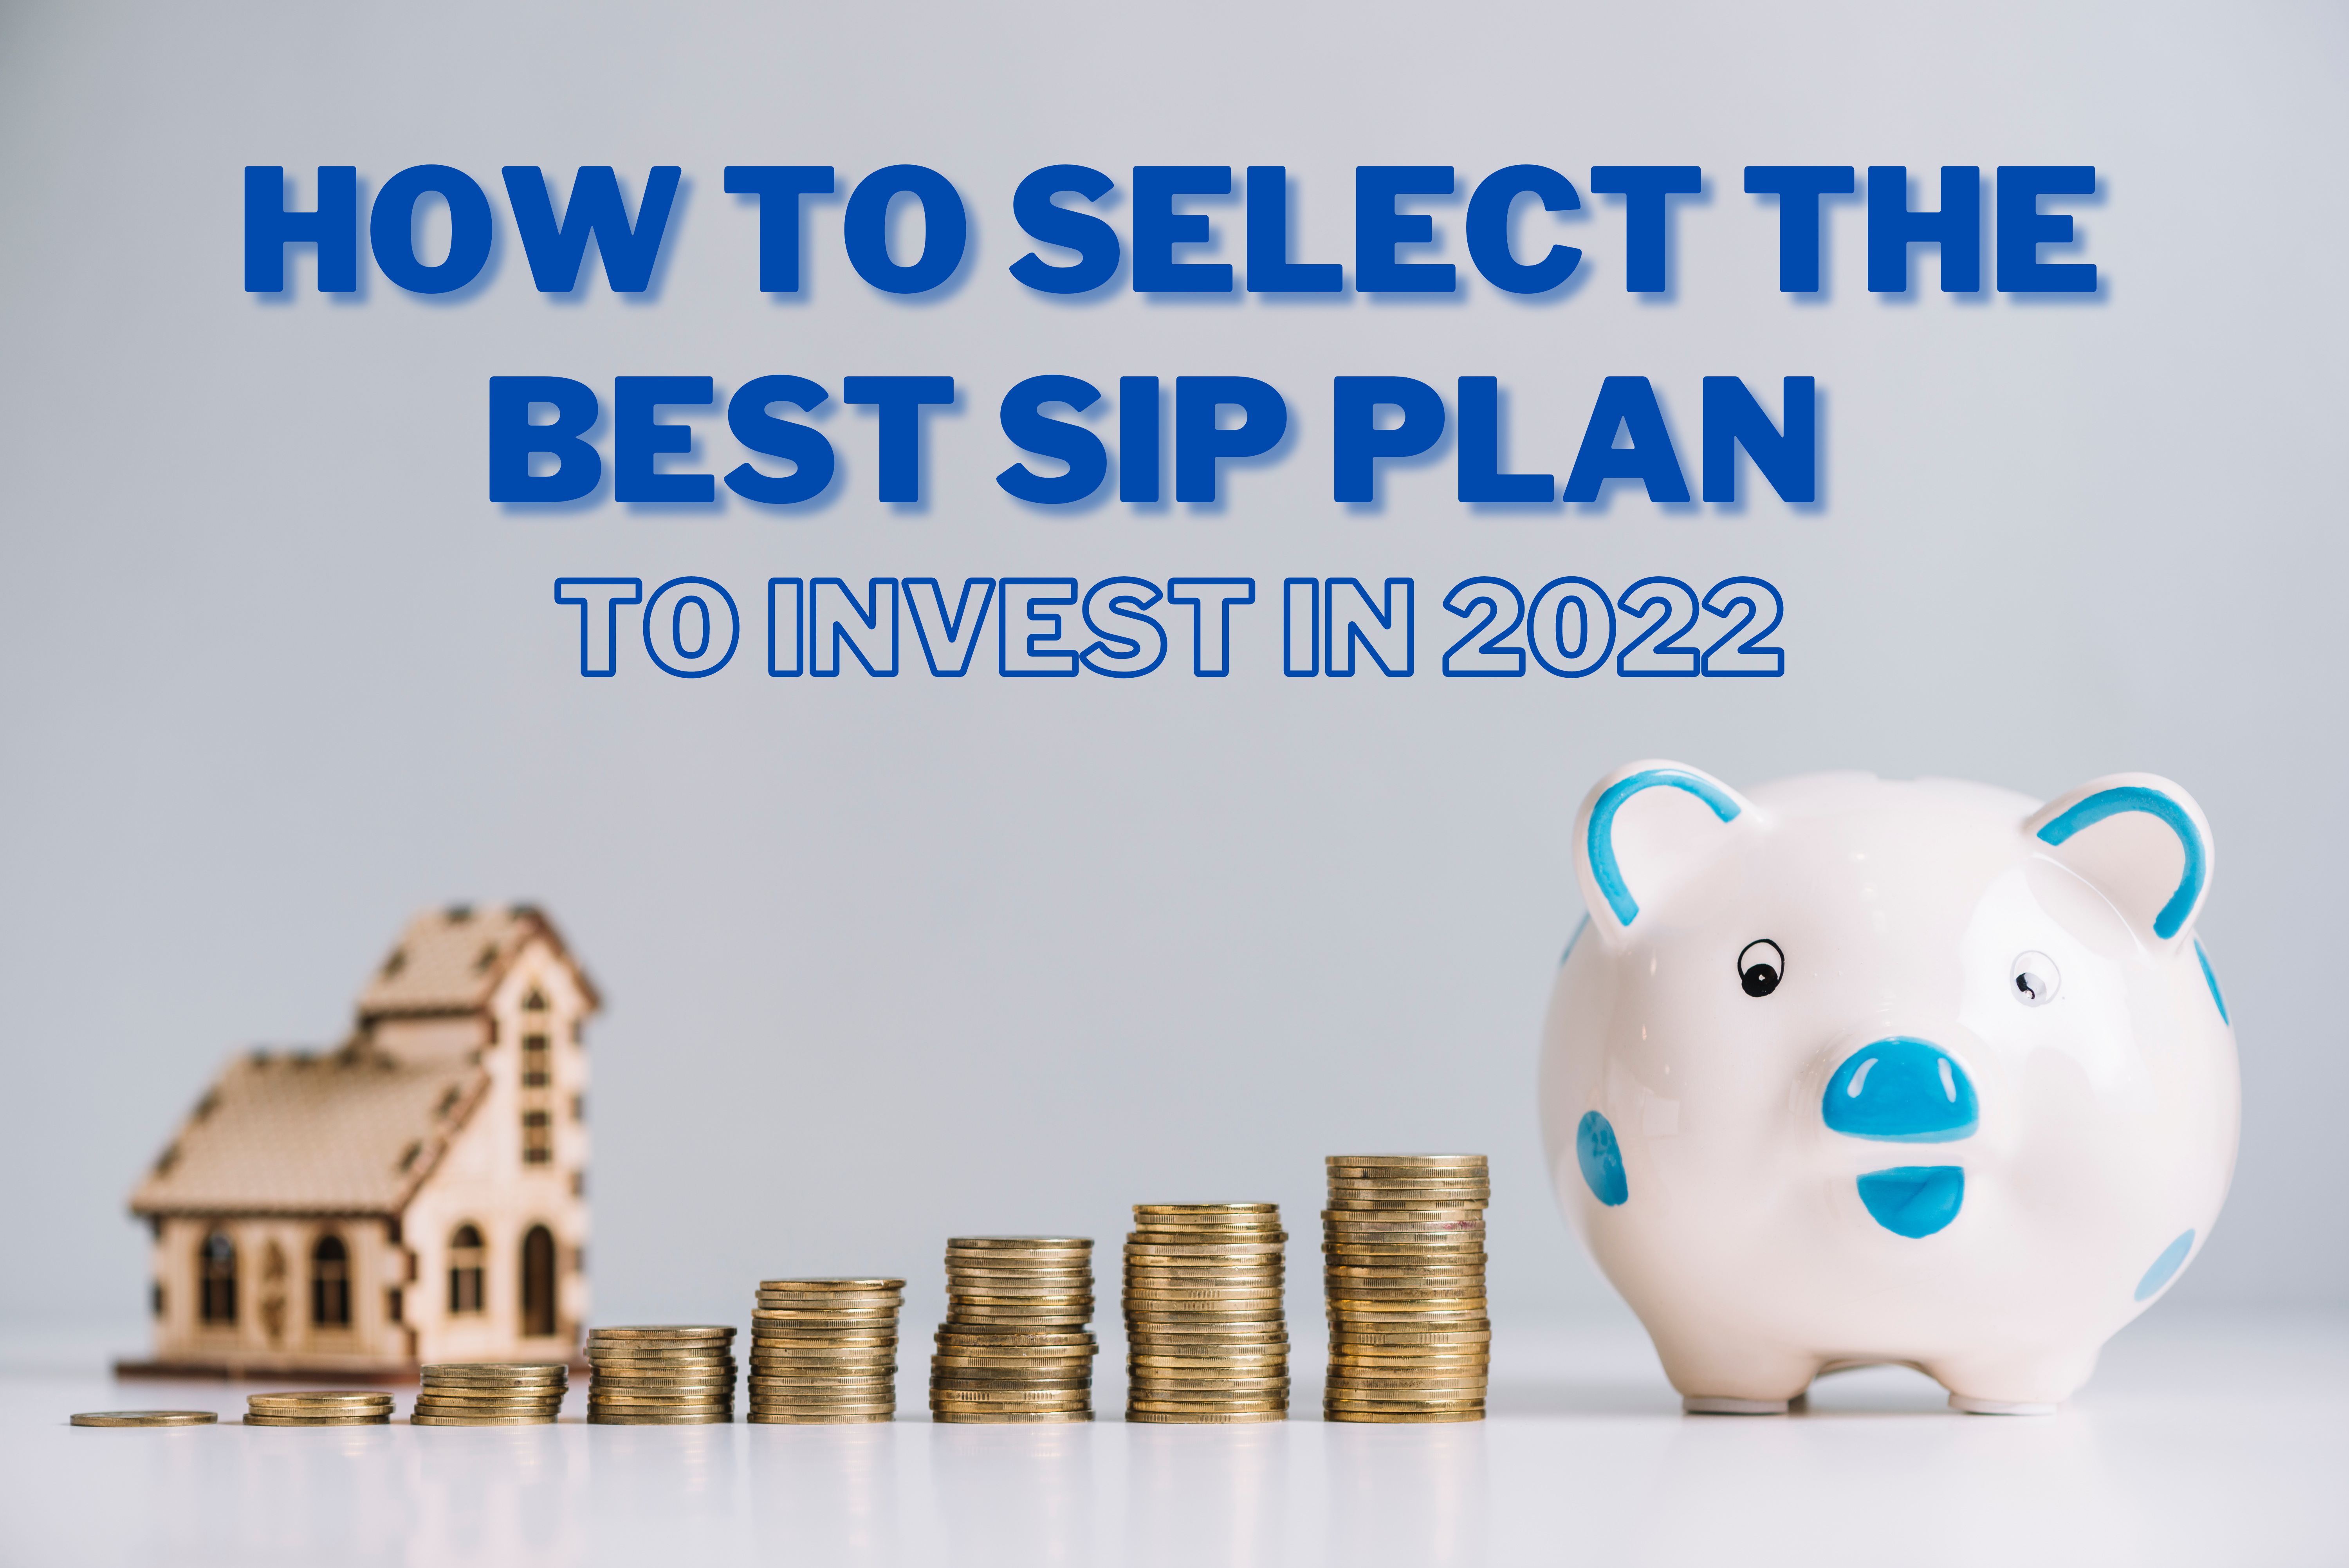 Best SIP plan to invest